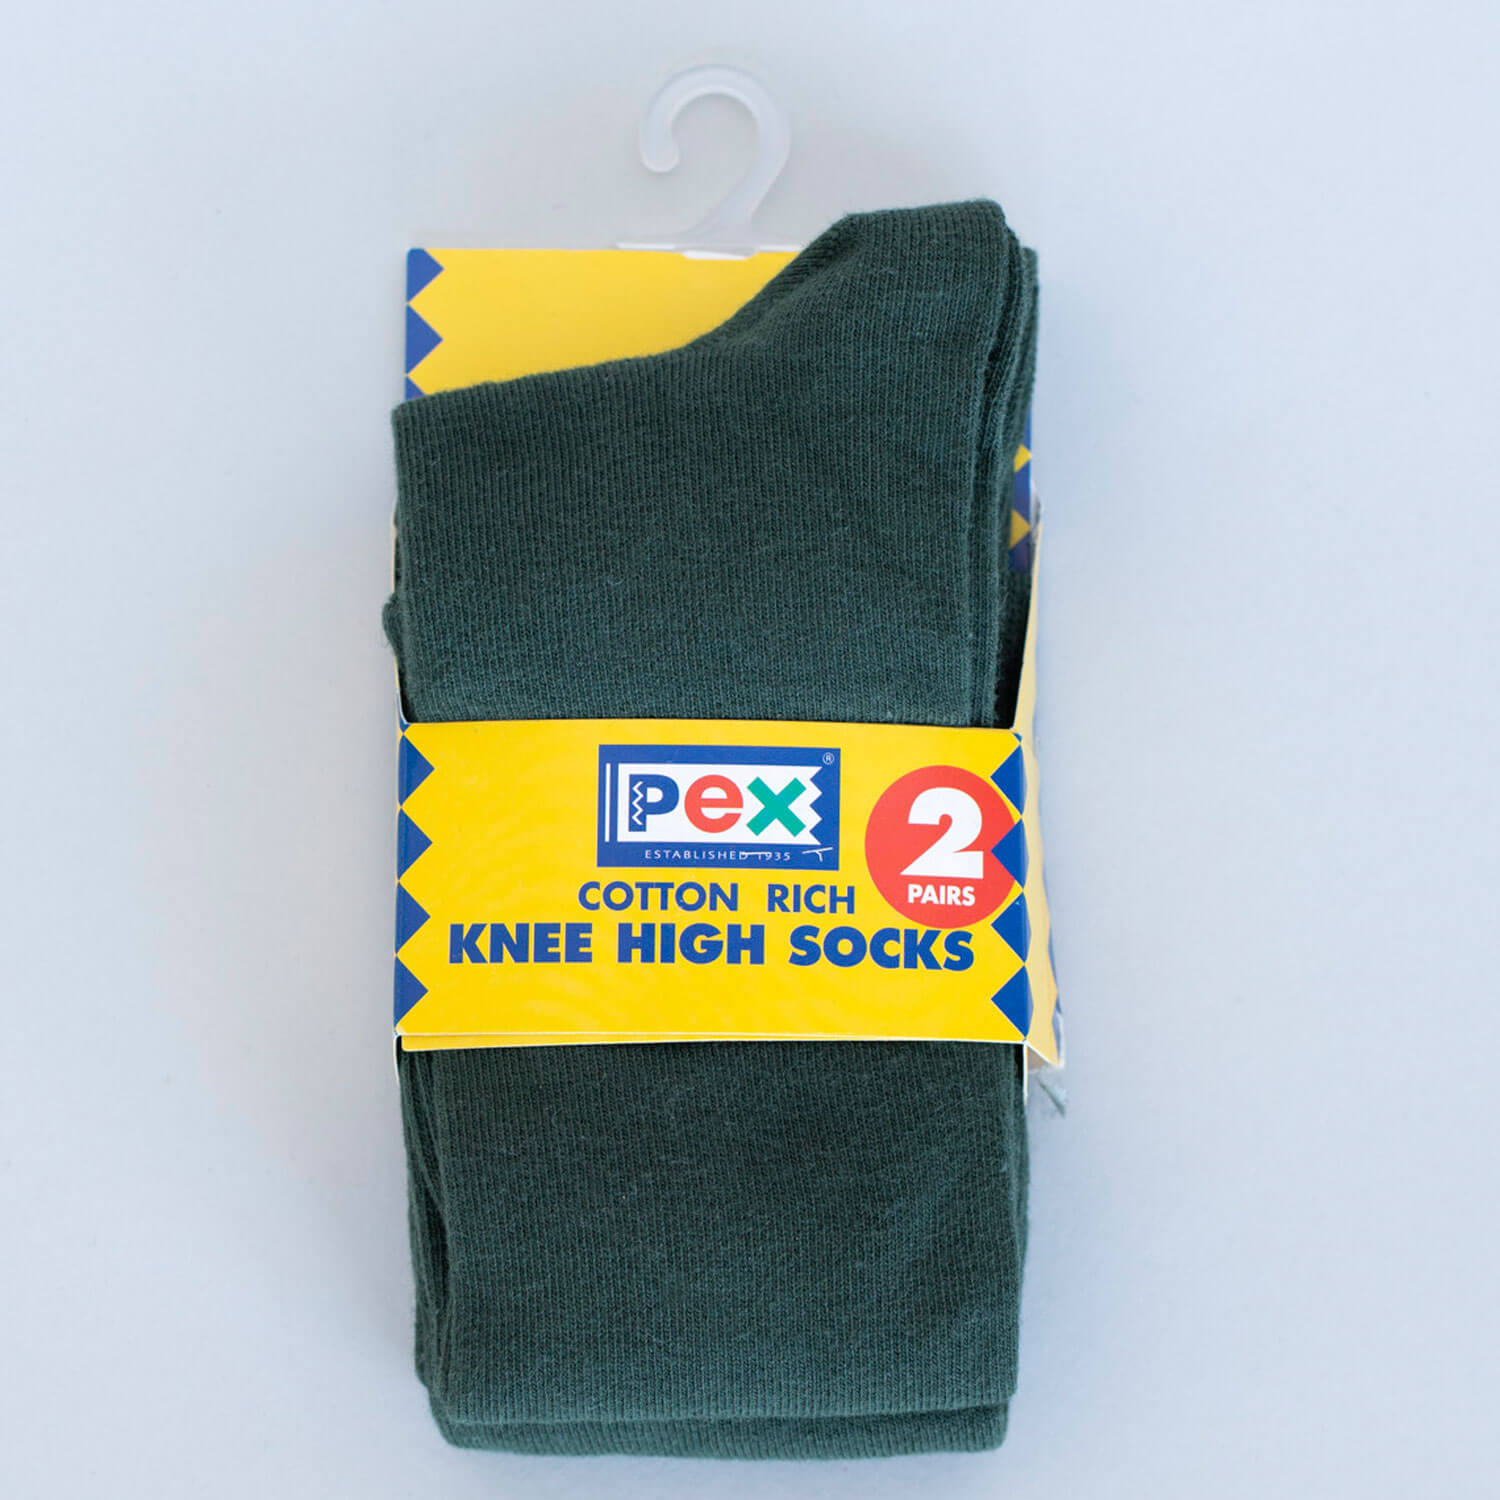 Pex Graduate Socks 2 Pair Pack 1 Shaws Department Stores